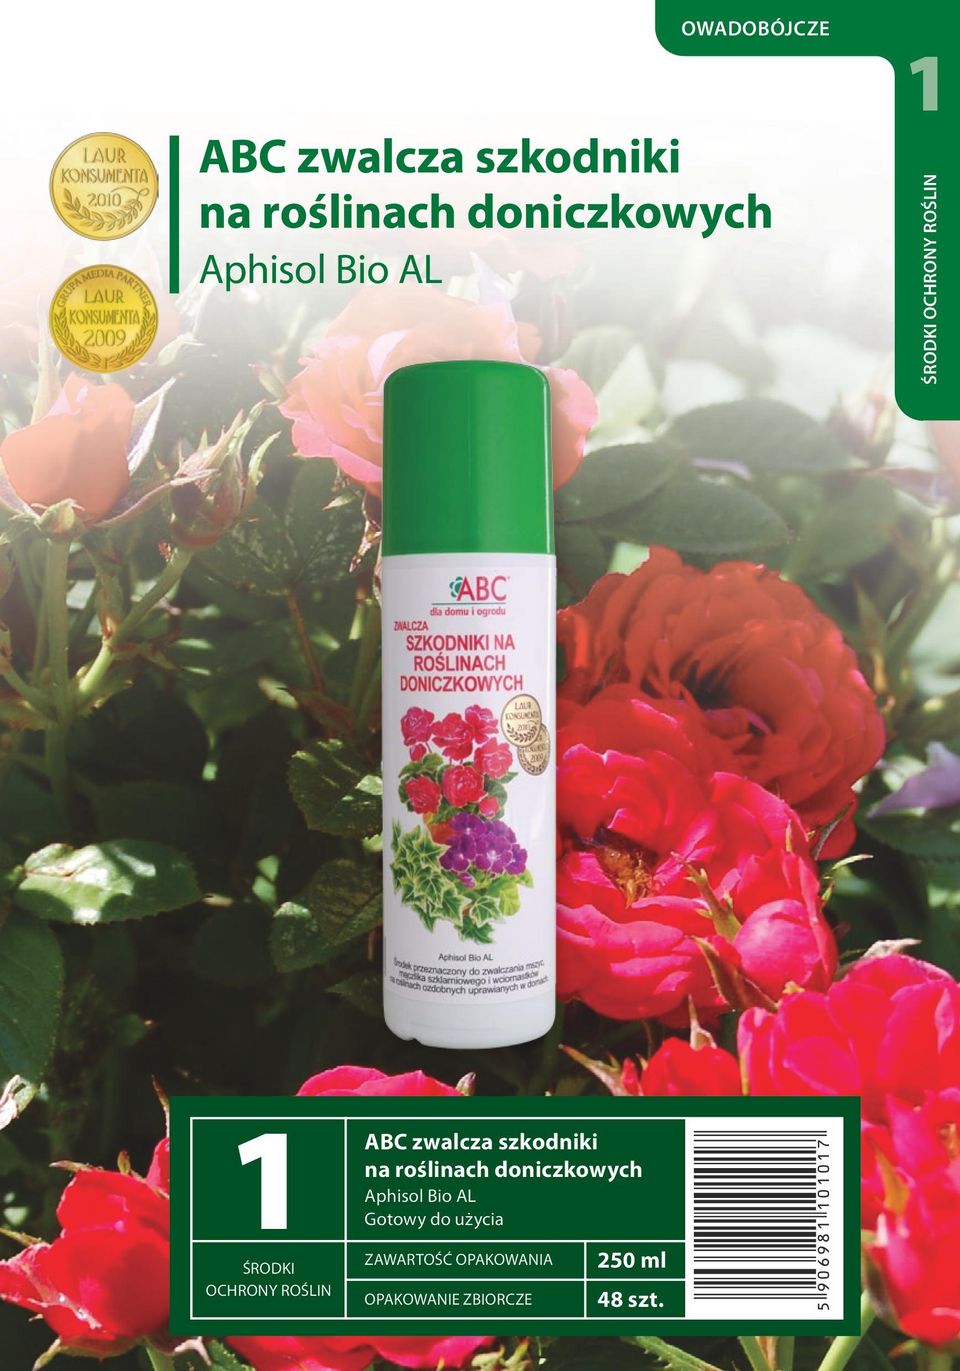 ABC zwalcza szkodniki na roślinach doniczkowych Aphisol Bio AL